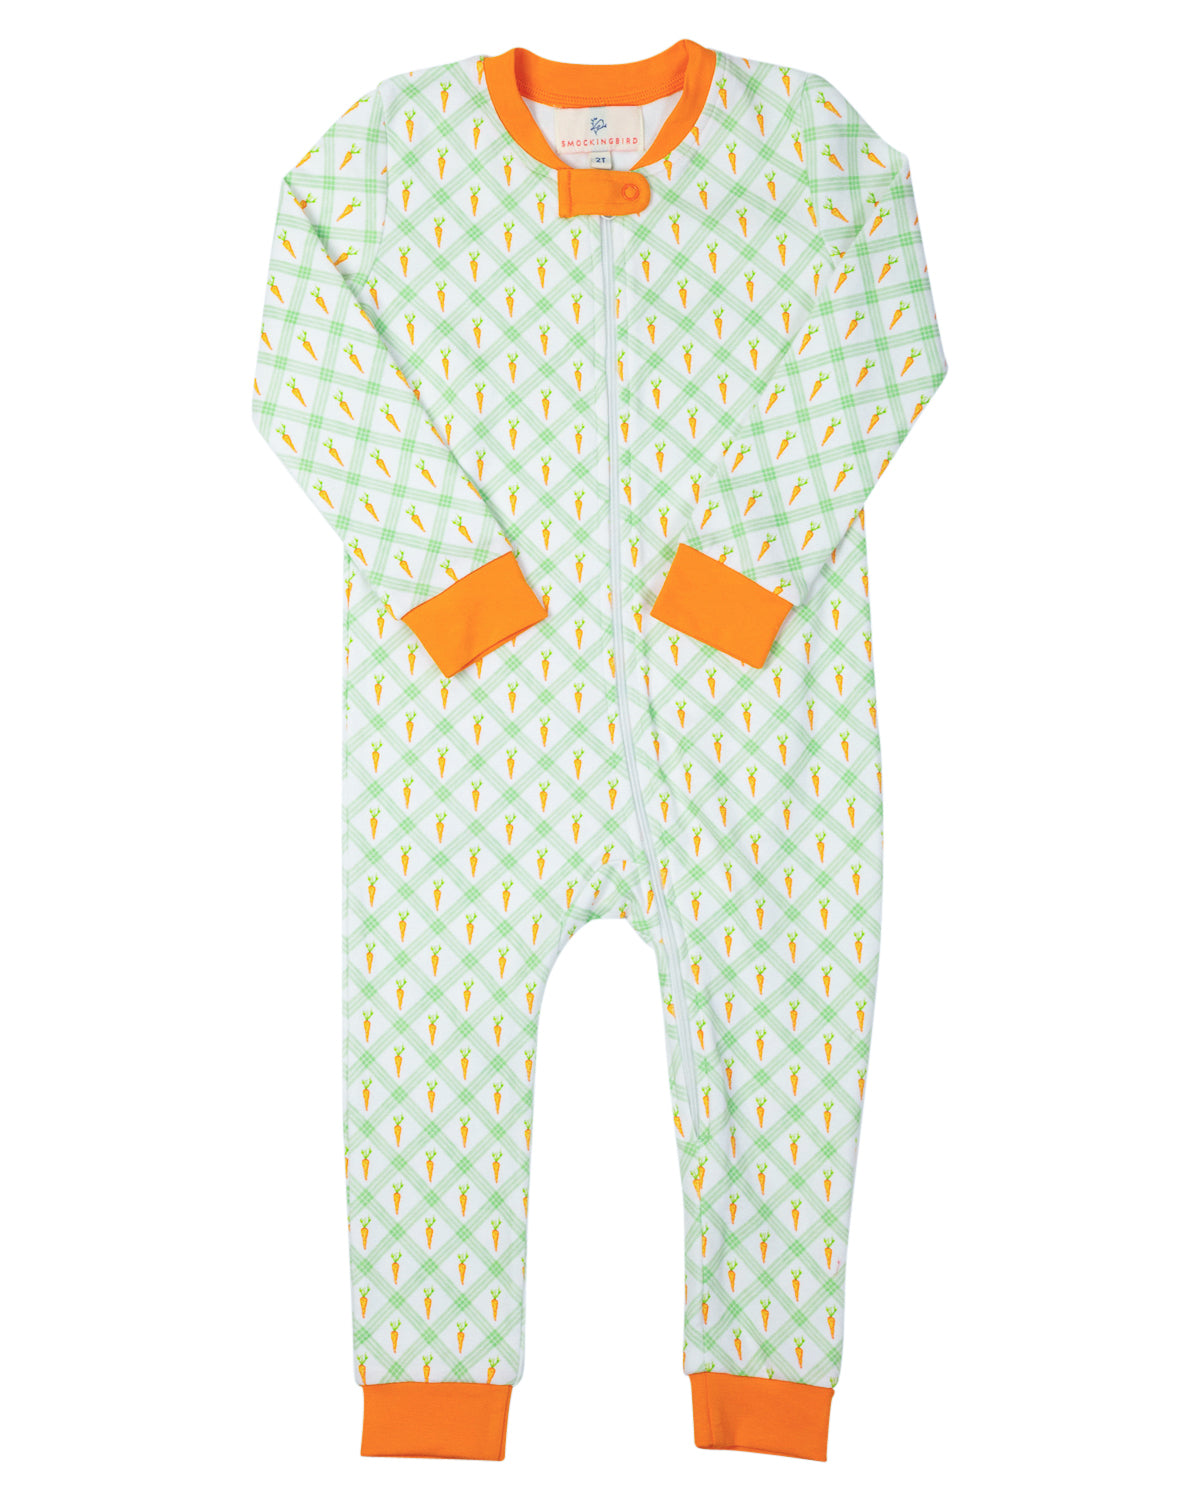 Carrot Crush Knit Zip Up Pajamas-FINAL SALE